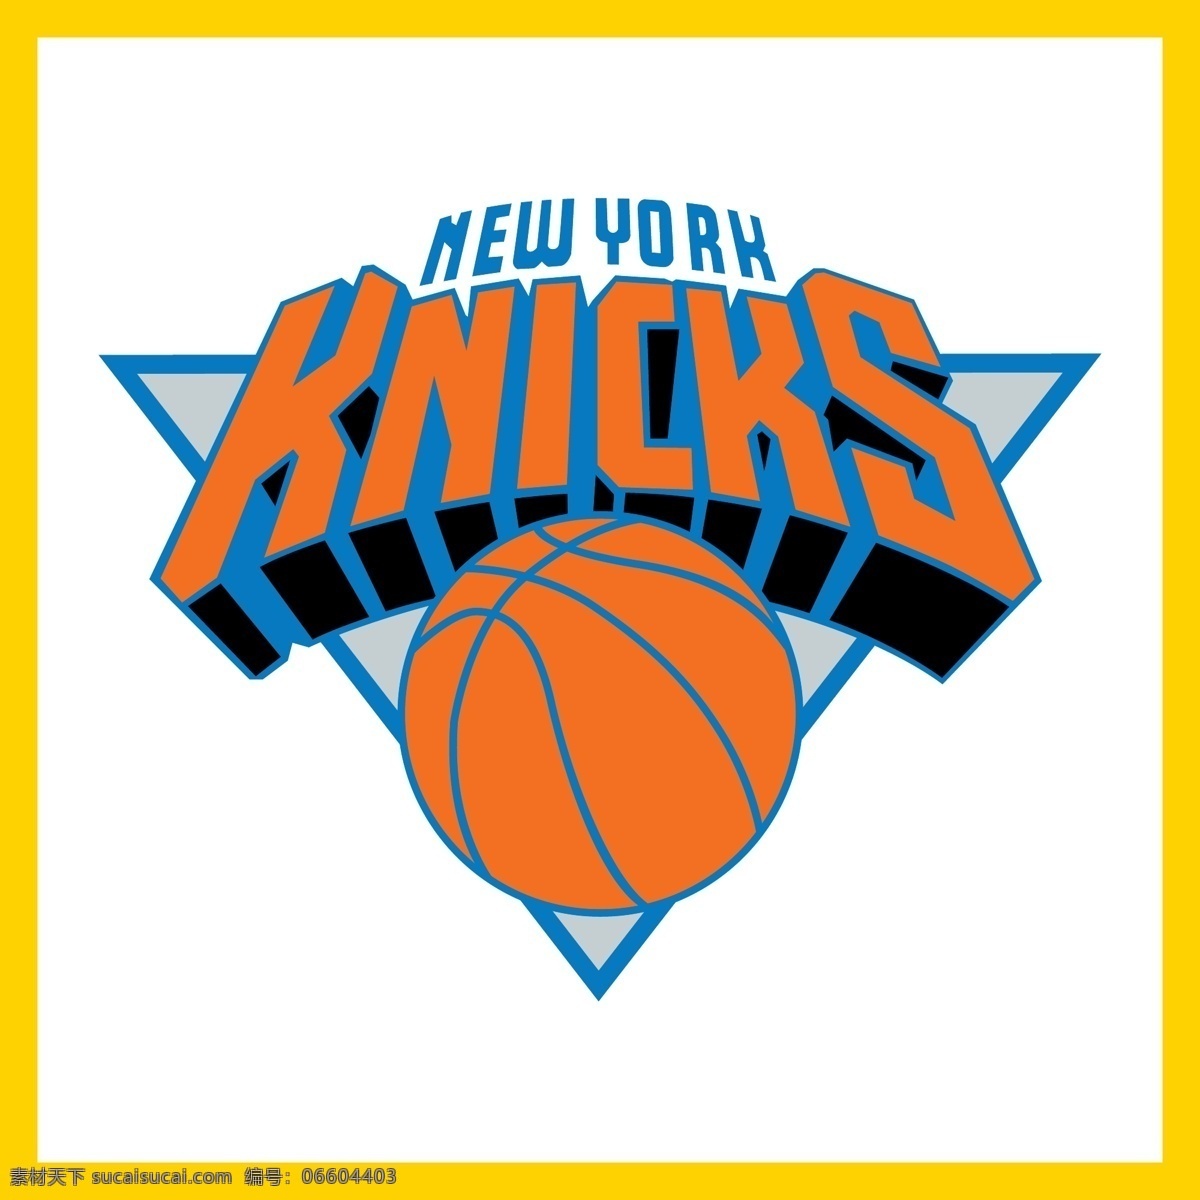 纽约尼克斯队 nba 总冠军 金牌选手 篮球 足球 橄榄球 棒球 游泳 奥运会 全运会 体育运动 明星 logo 标志 矢量 vi logo设计